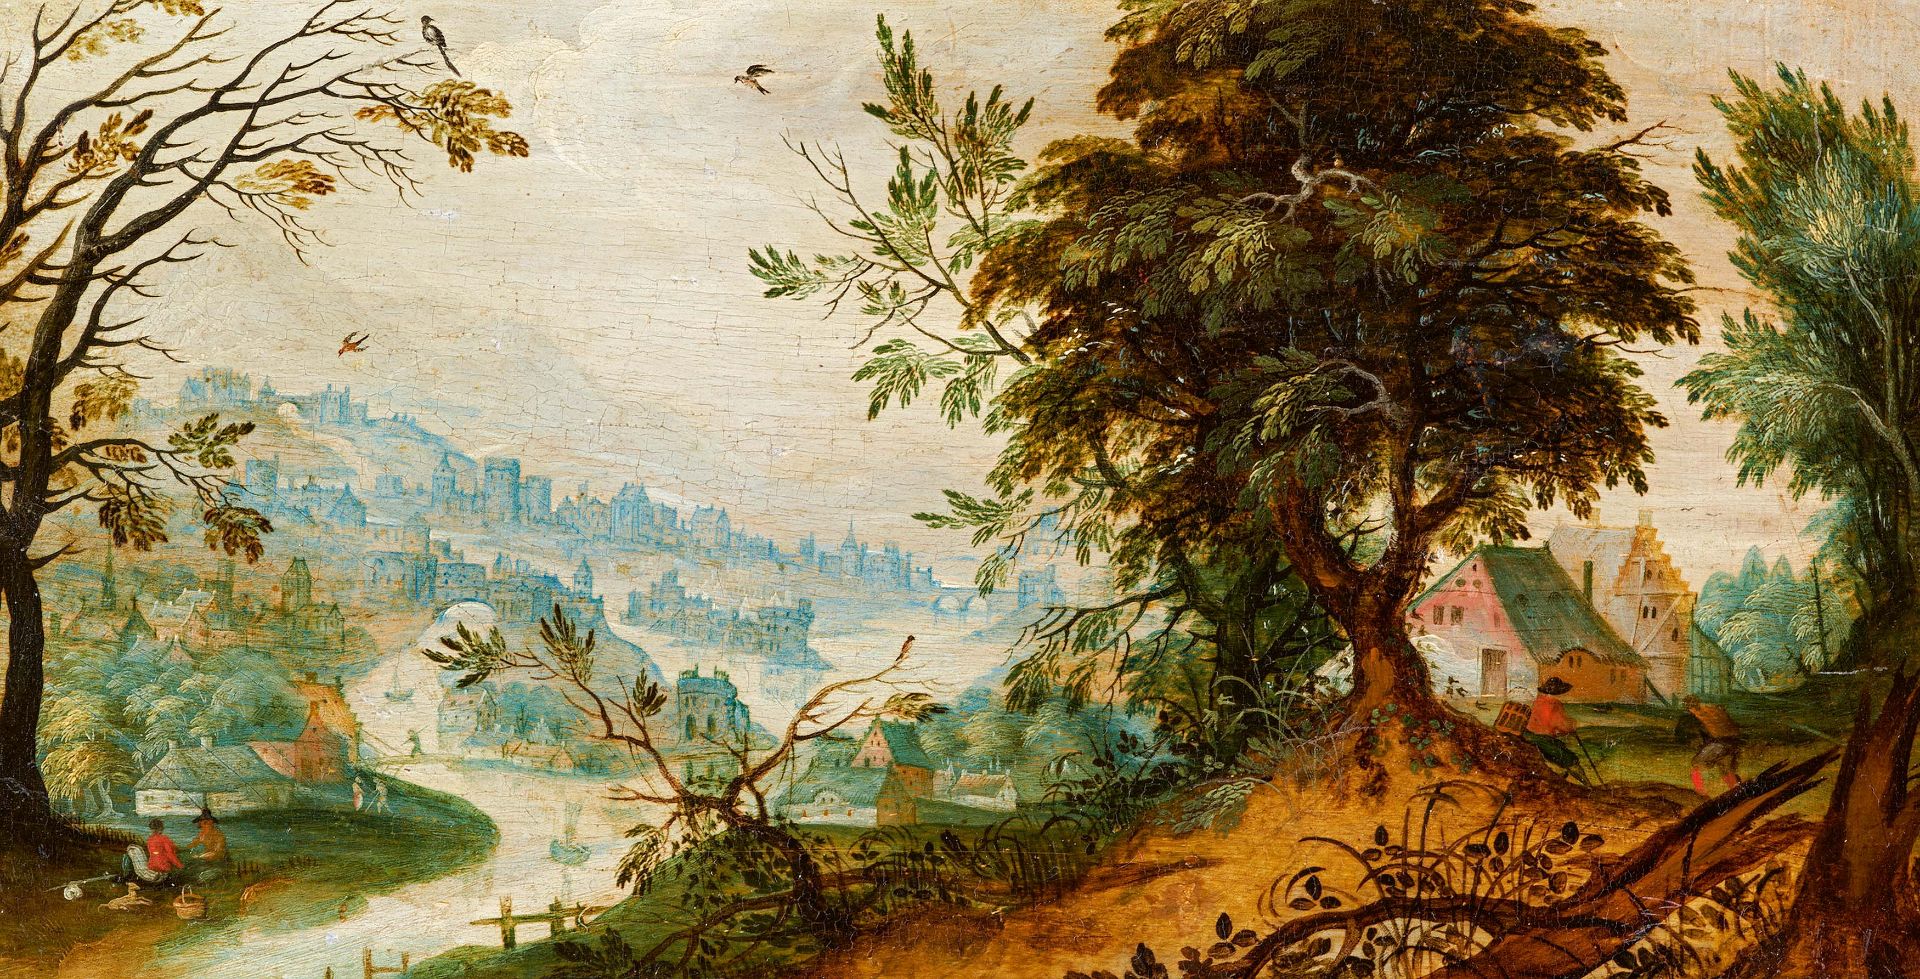 Joos de Momper Antwerp 1564 - 1635: River Landscape